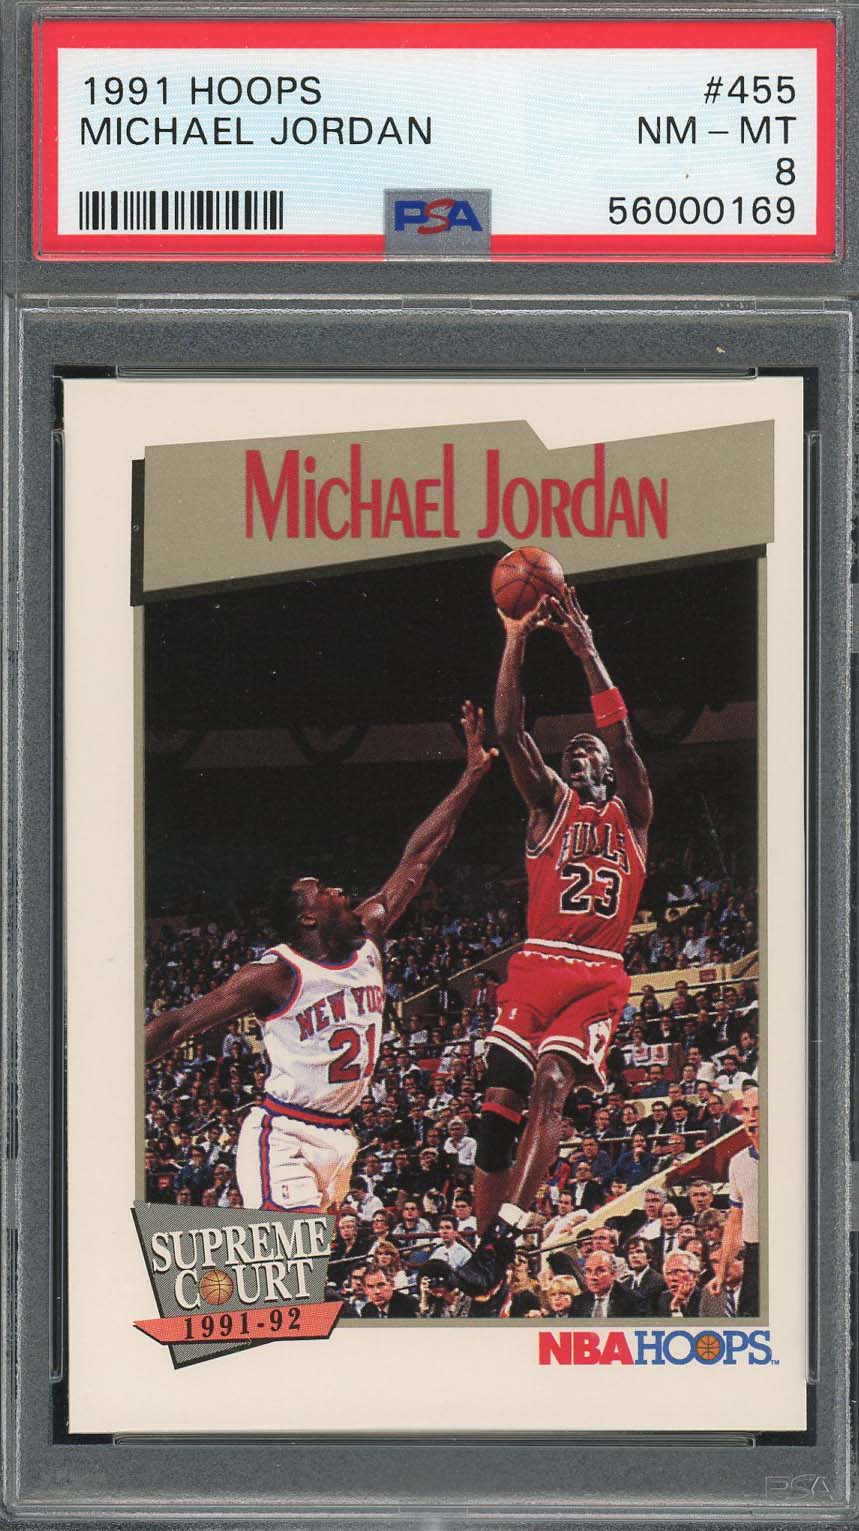 マイケル ジョーダン 1991 フープ バスケットボール カード #455 